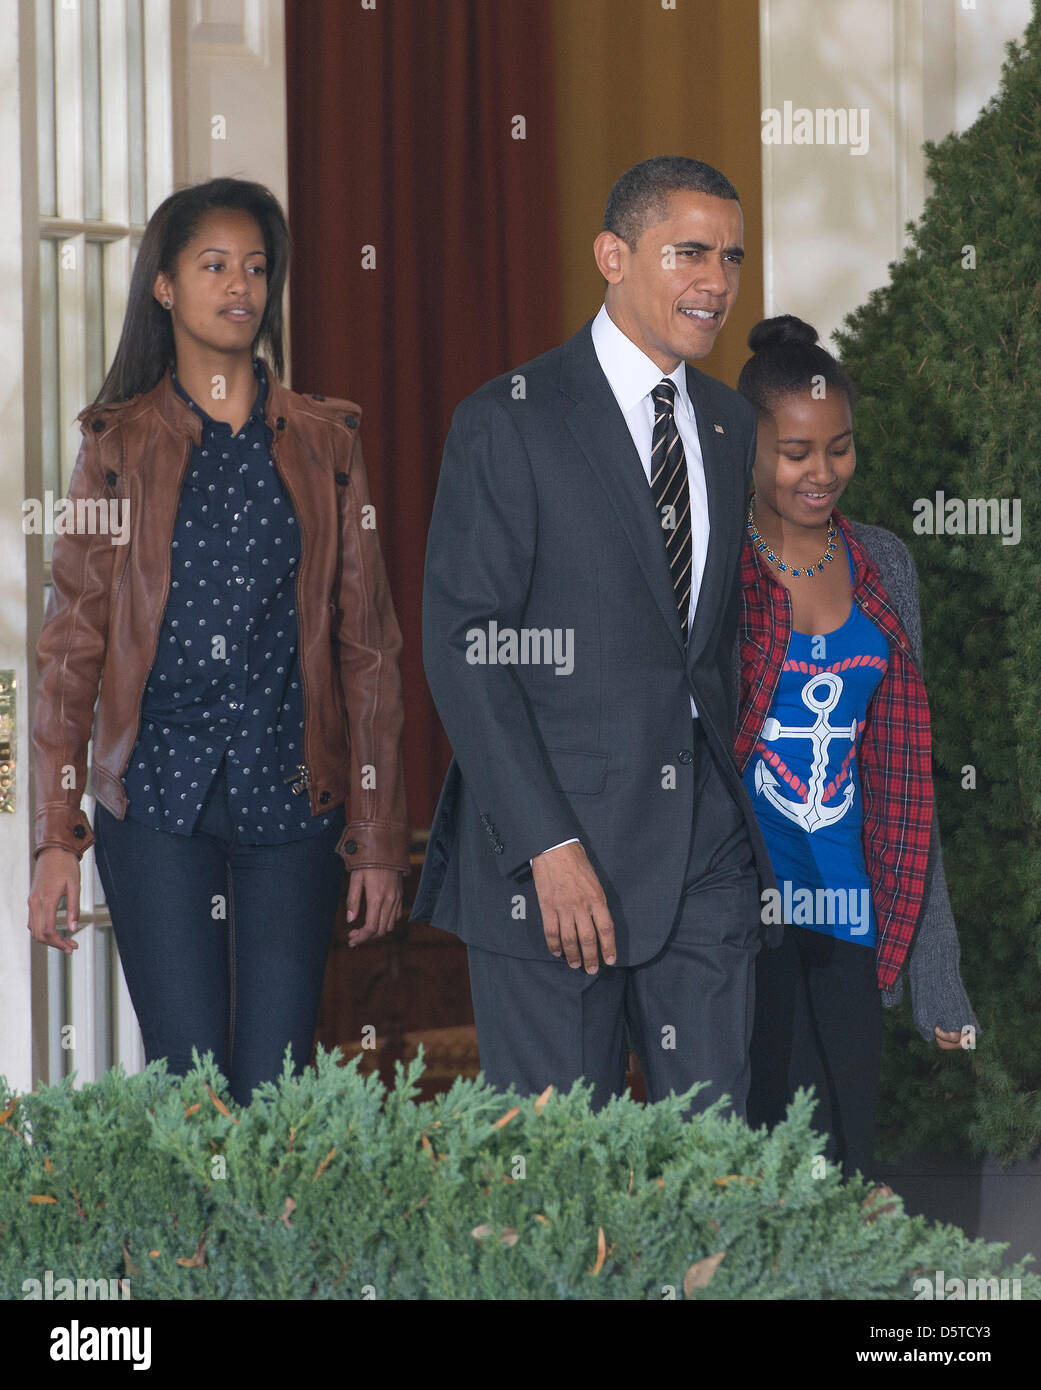 El Presidente de Estados Unidos, Barack Obama, en el centro, flanqueado por sus  hijas Malia y Sasha, izquierda, derecha, salen de la Oficina Oval para  participar en el ritual anual de la